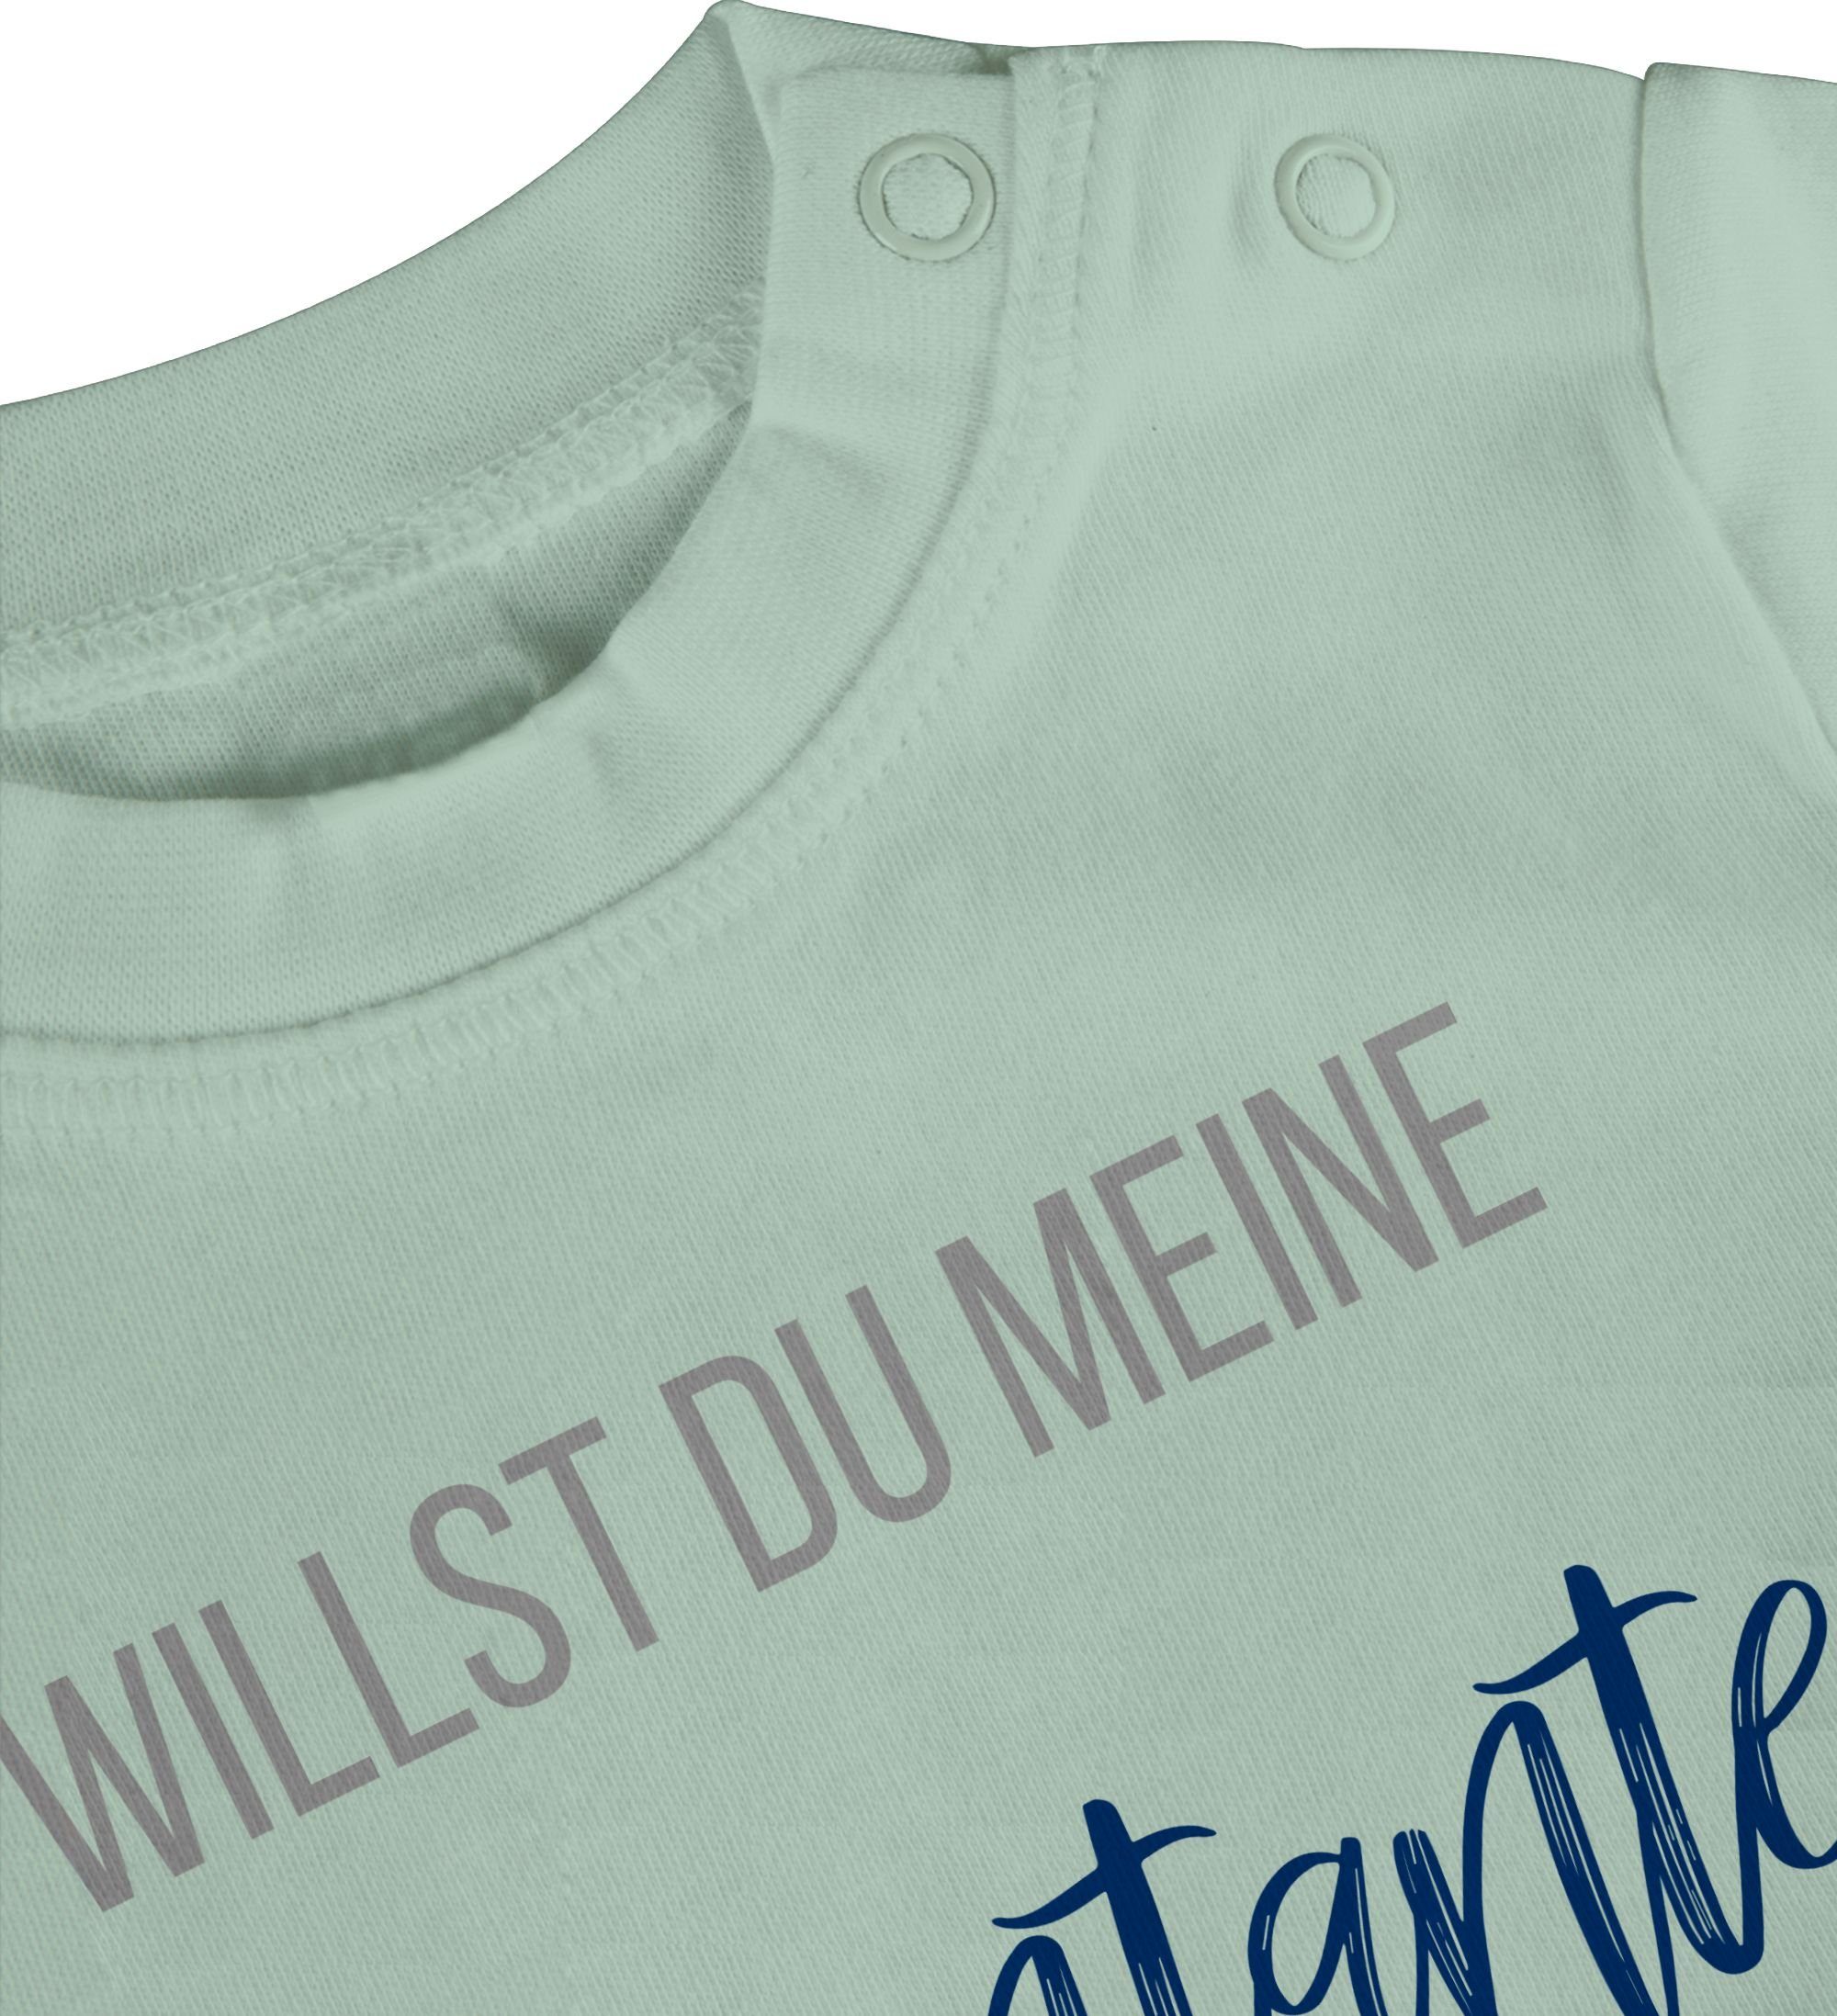 sein? T-Shirt Marine 2 Patentante du Mintgrün meine Patentante Willst Baby Shirtracer